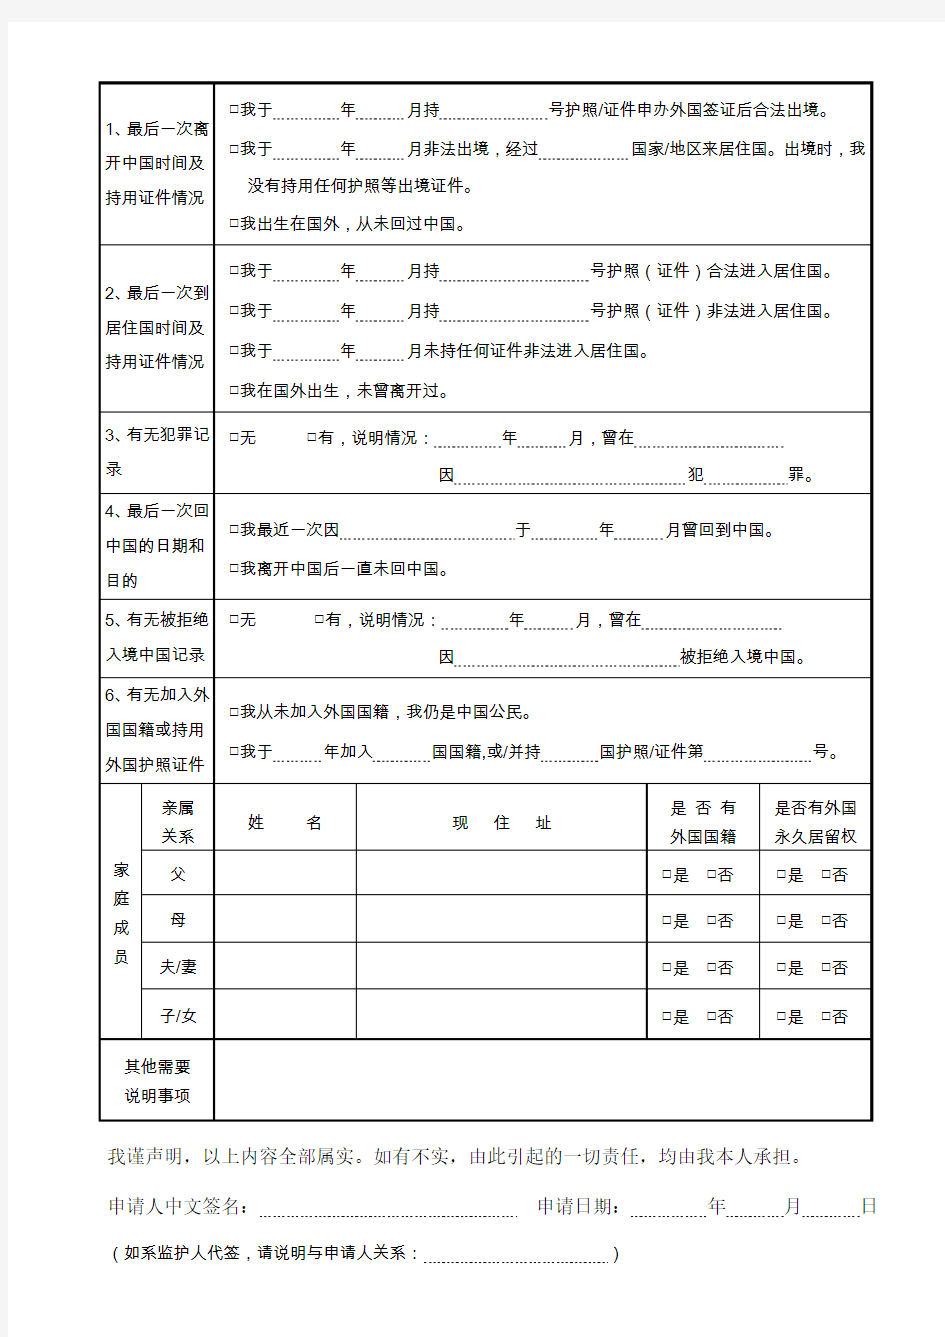 中华人民共和国护照申请表